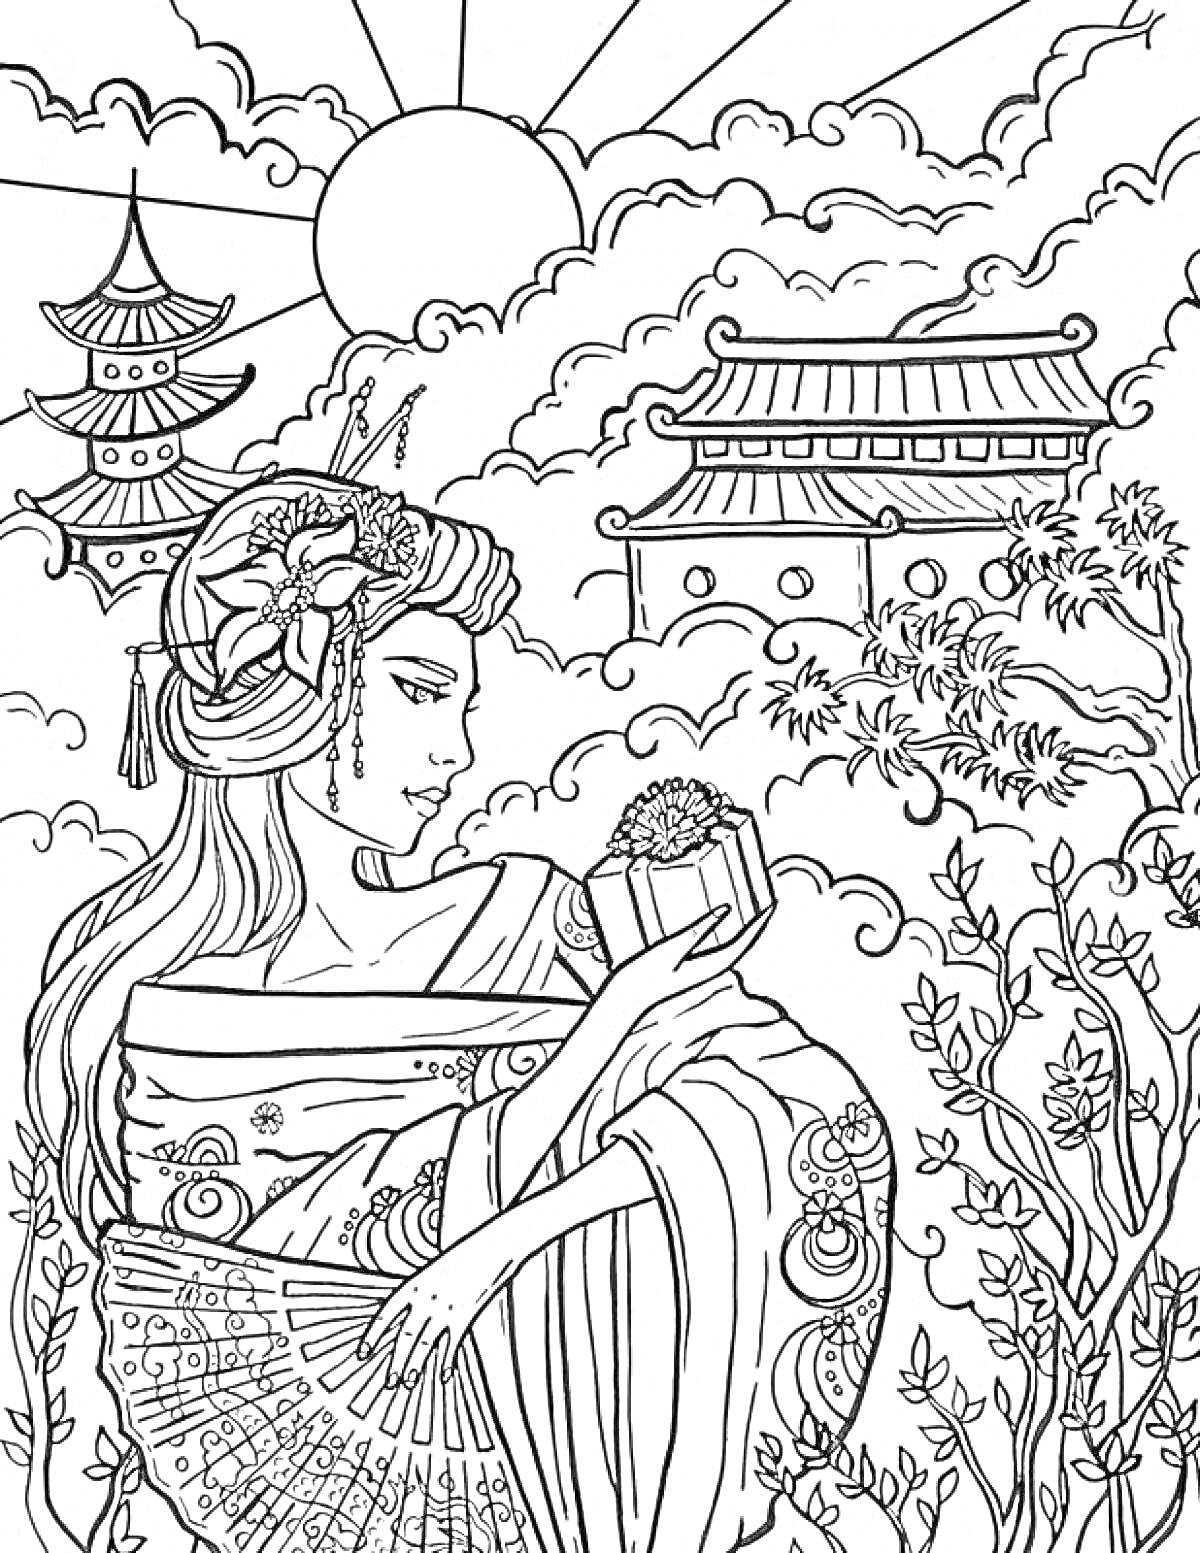 Раскраска Китайская женщина в традиционном наряде с веером и коробочкой в руках на фоне пагоды и традиционного здания с восходящим солнцем и растительностью